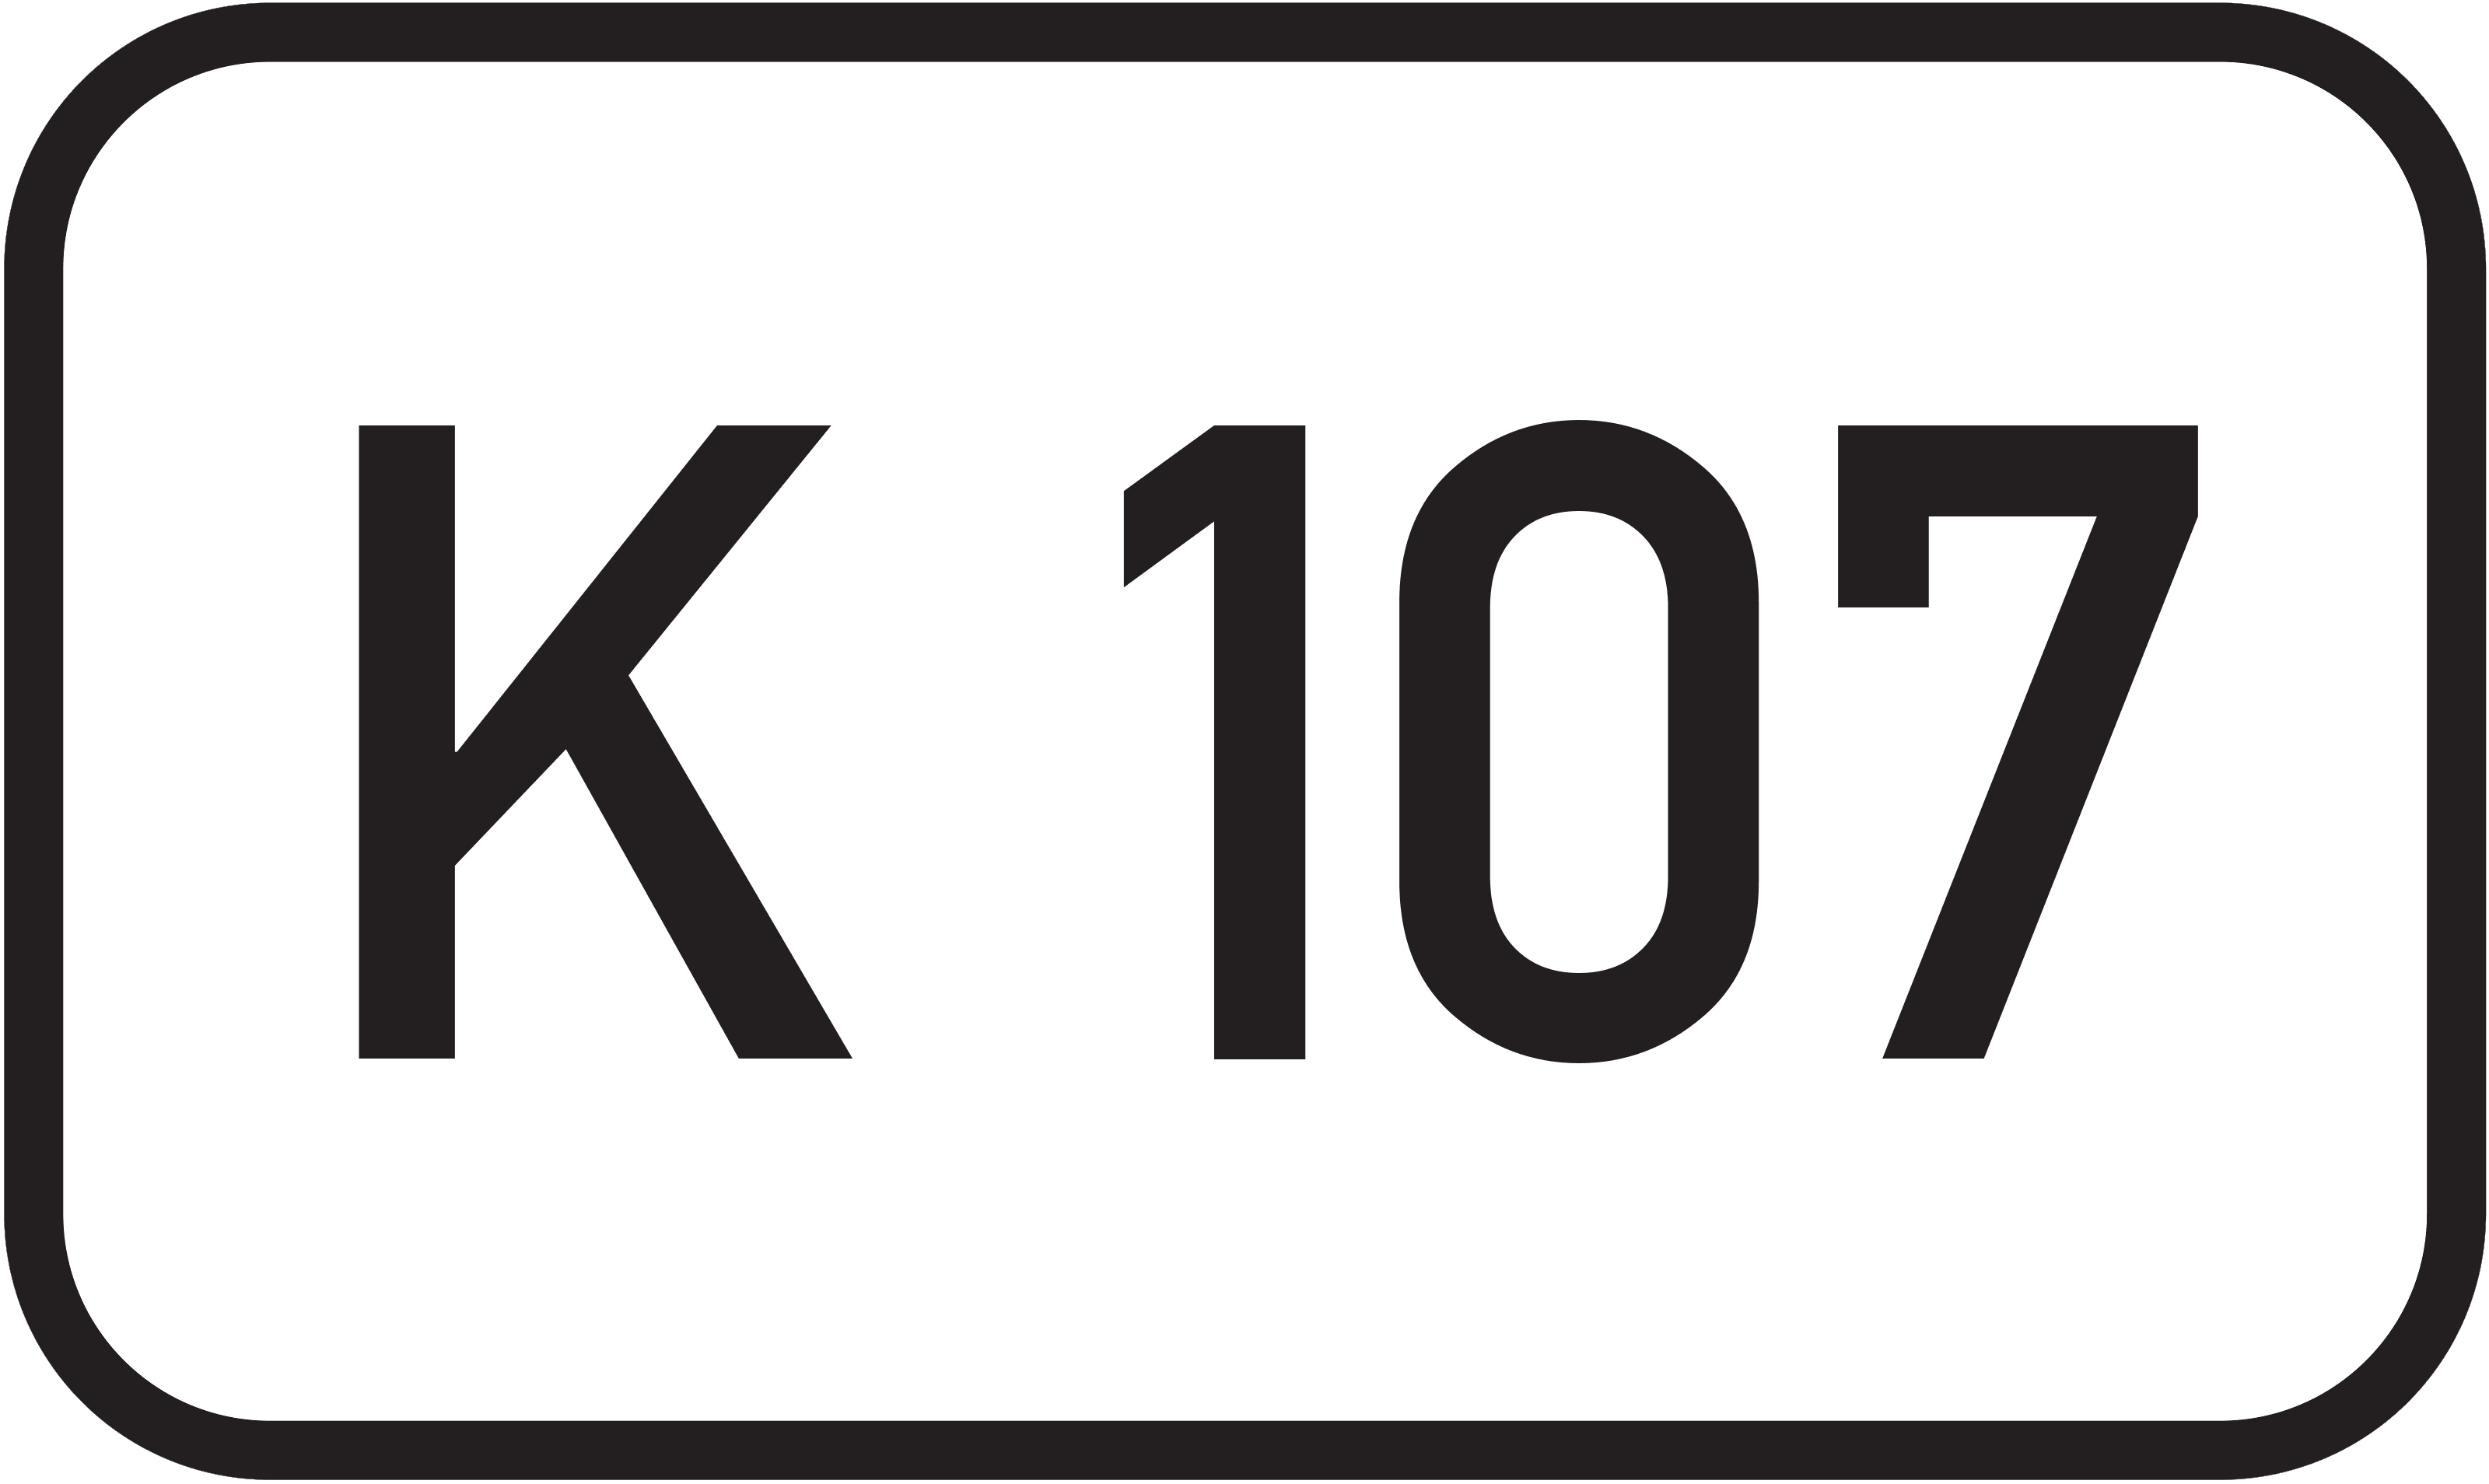 Kreisstraße K 107